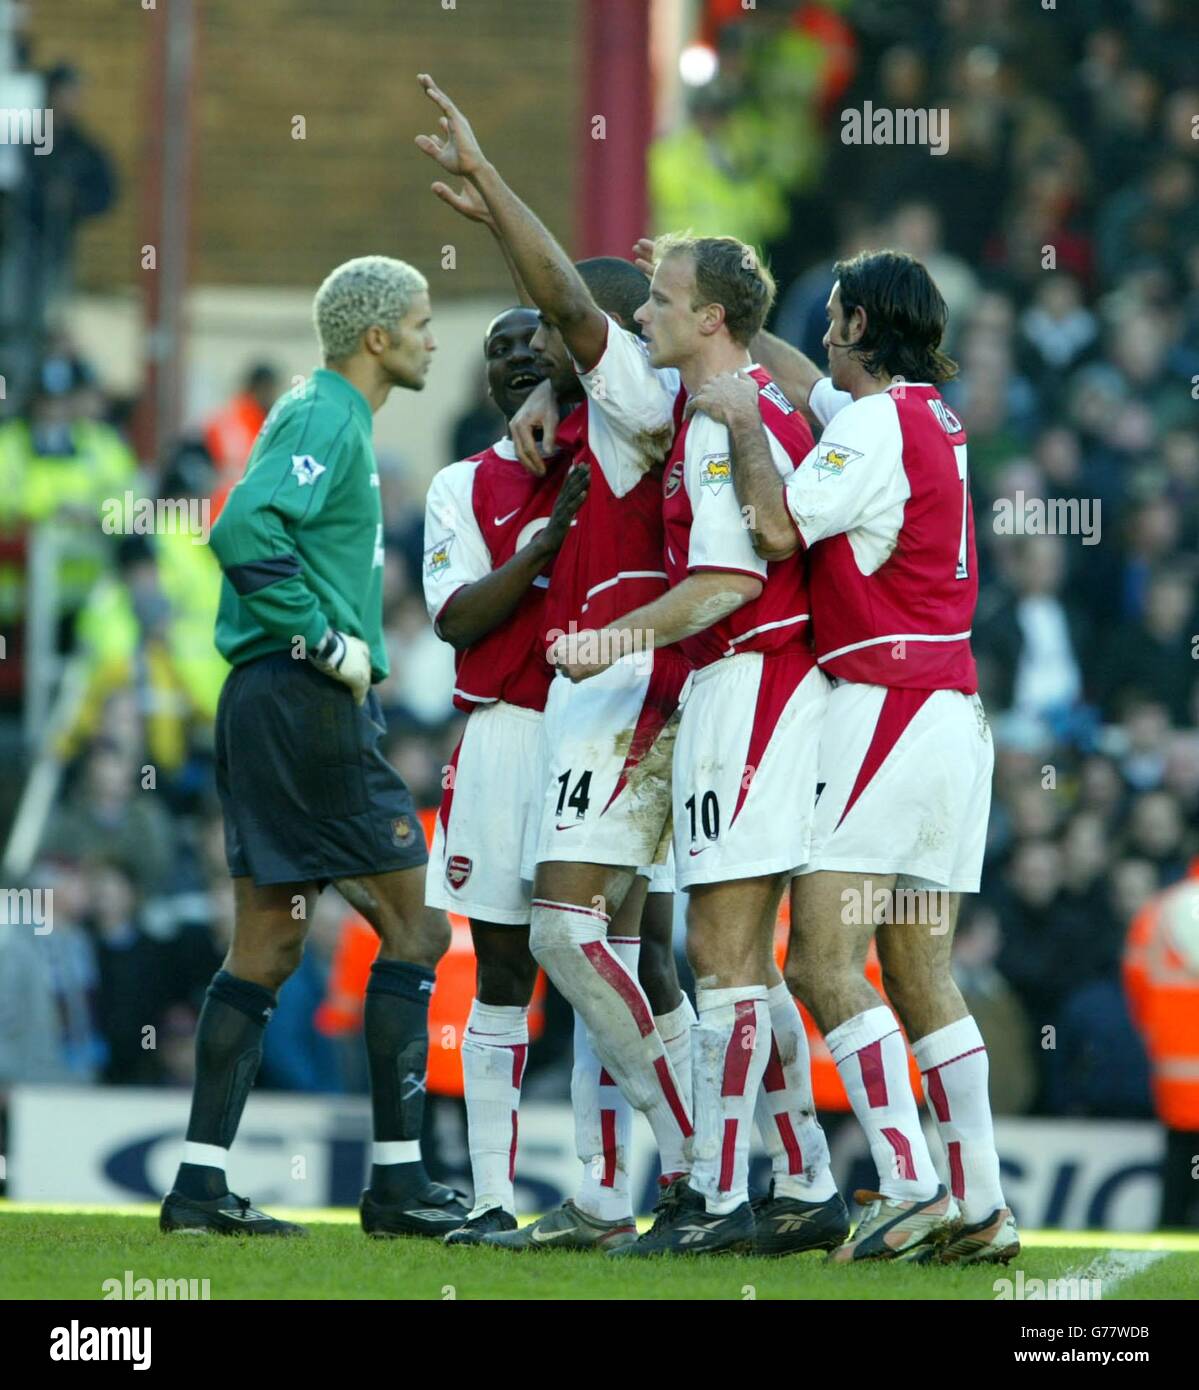 Thierry Henry d'Arsenal (armes levées) après avoir fait une pénalité contre West Ham lors de leur match Barclaycard Premiership à Highbury, dans le nord de Londres. Banque D'Images